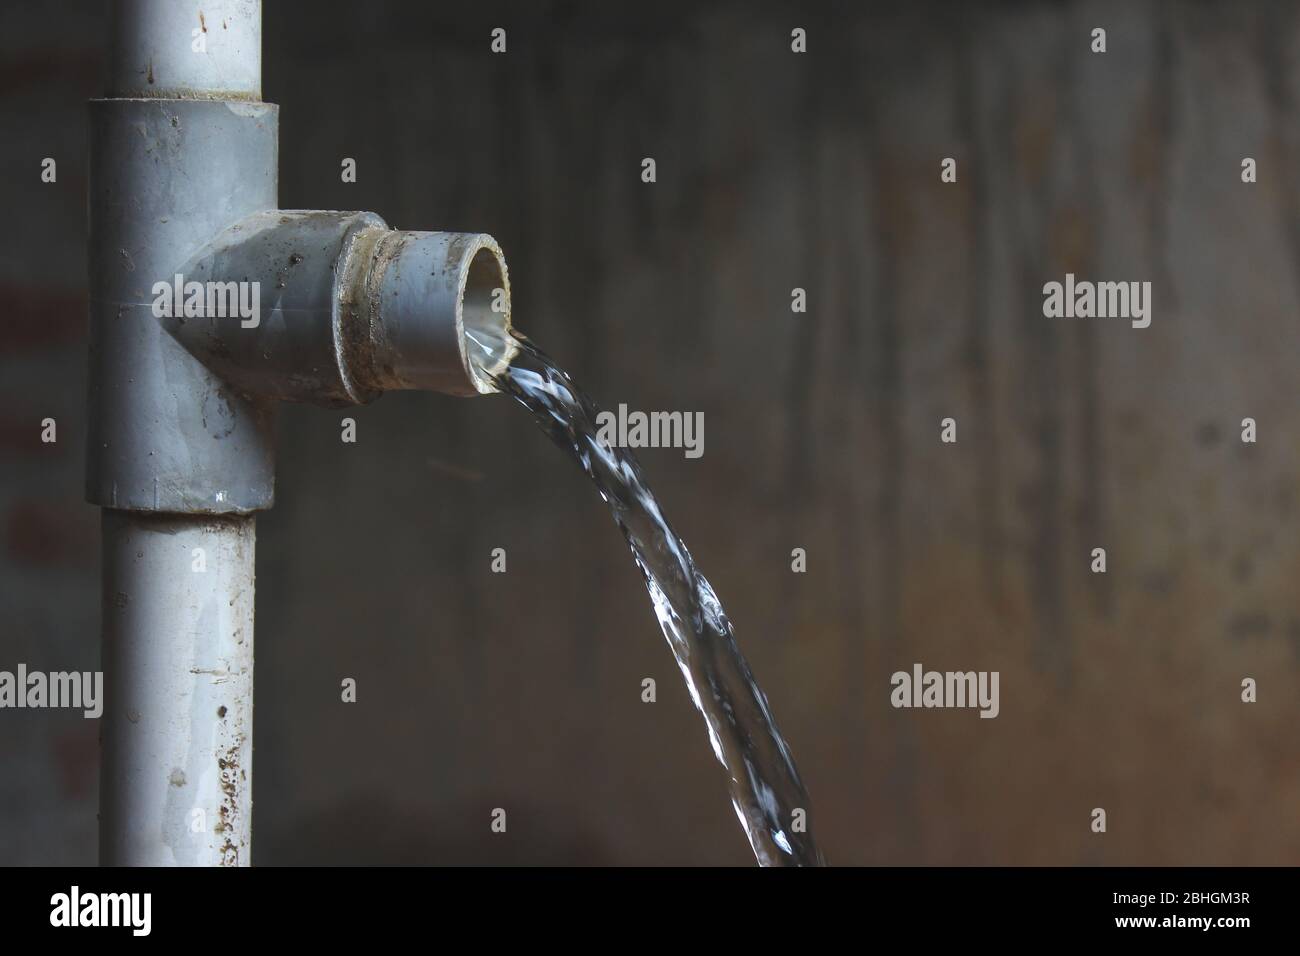 Undichte Leitung. Defekte/Undichte Wasserleitung Stockfotografie - Alamy